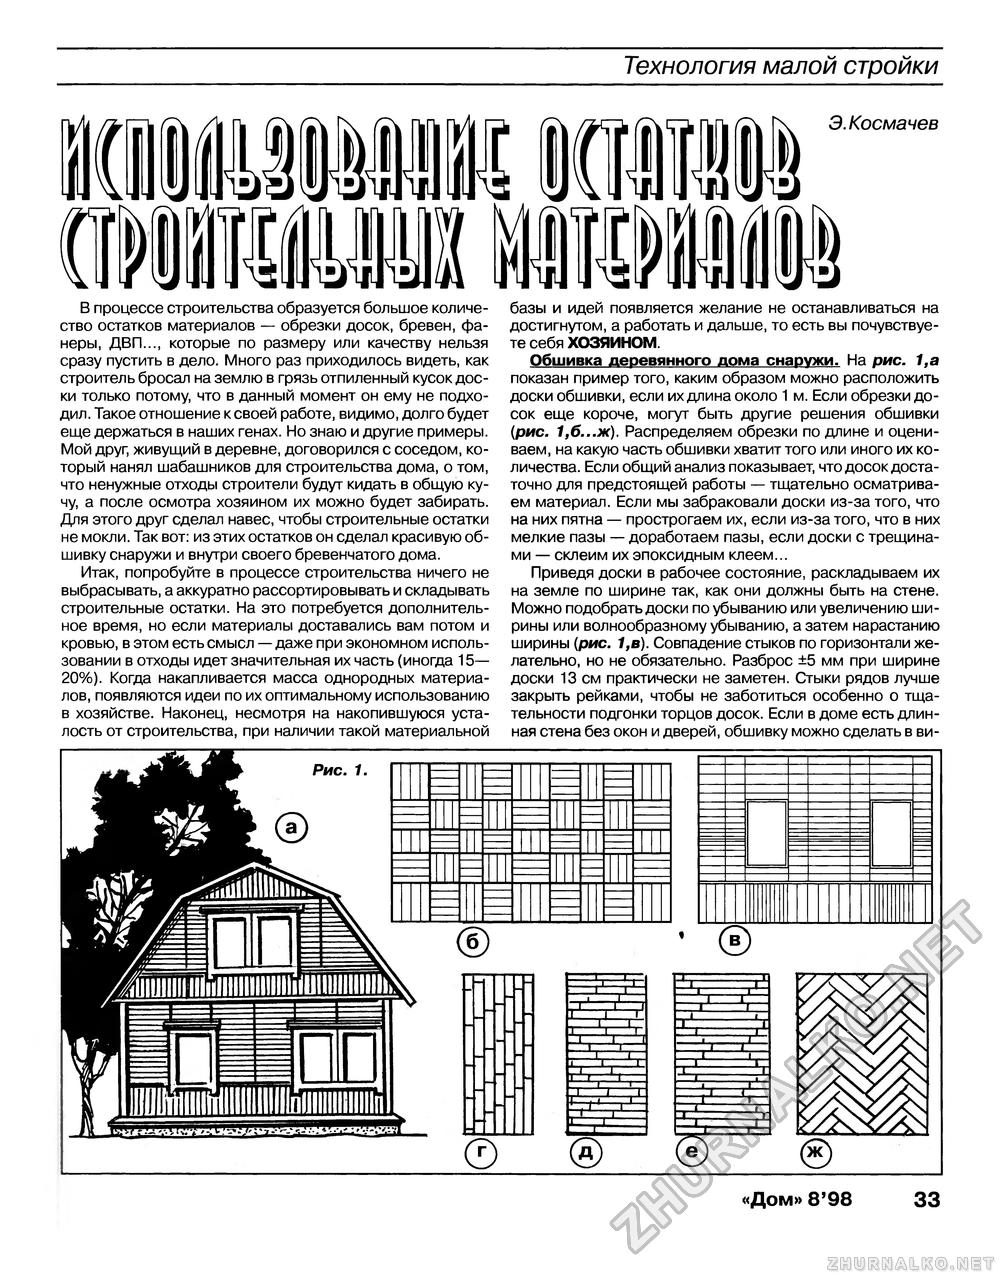 Дом 1998-08, страница 33